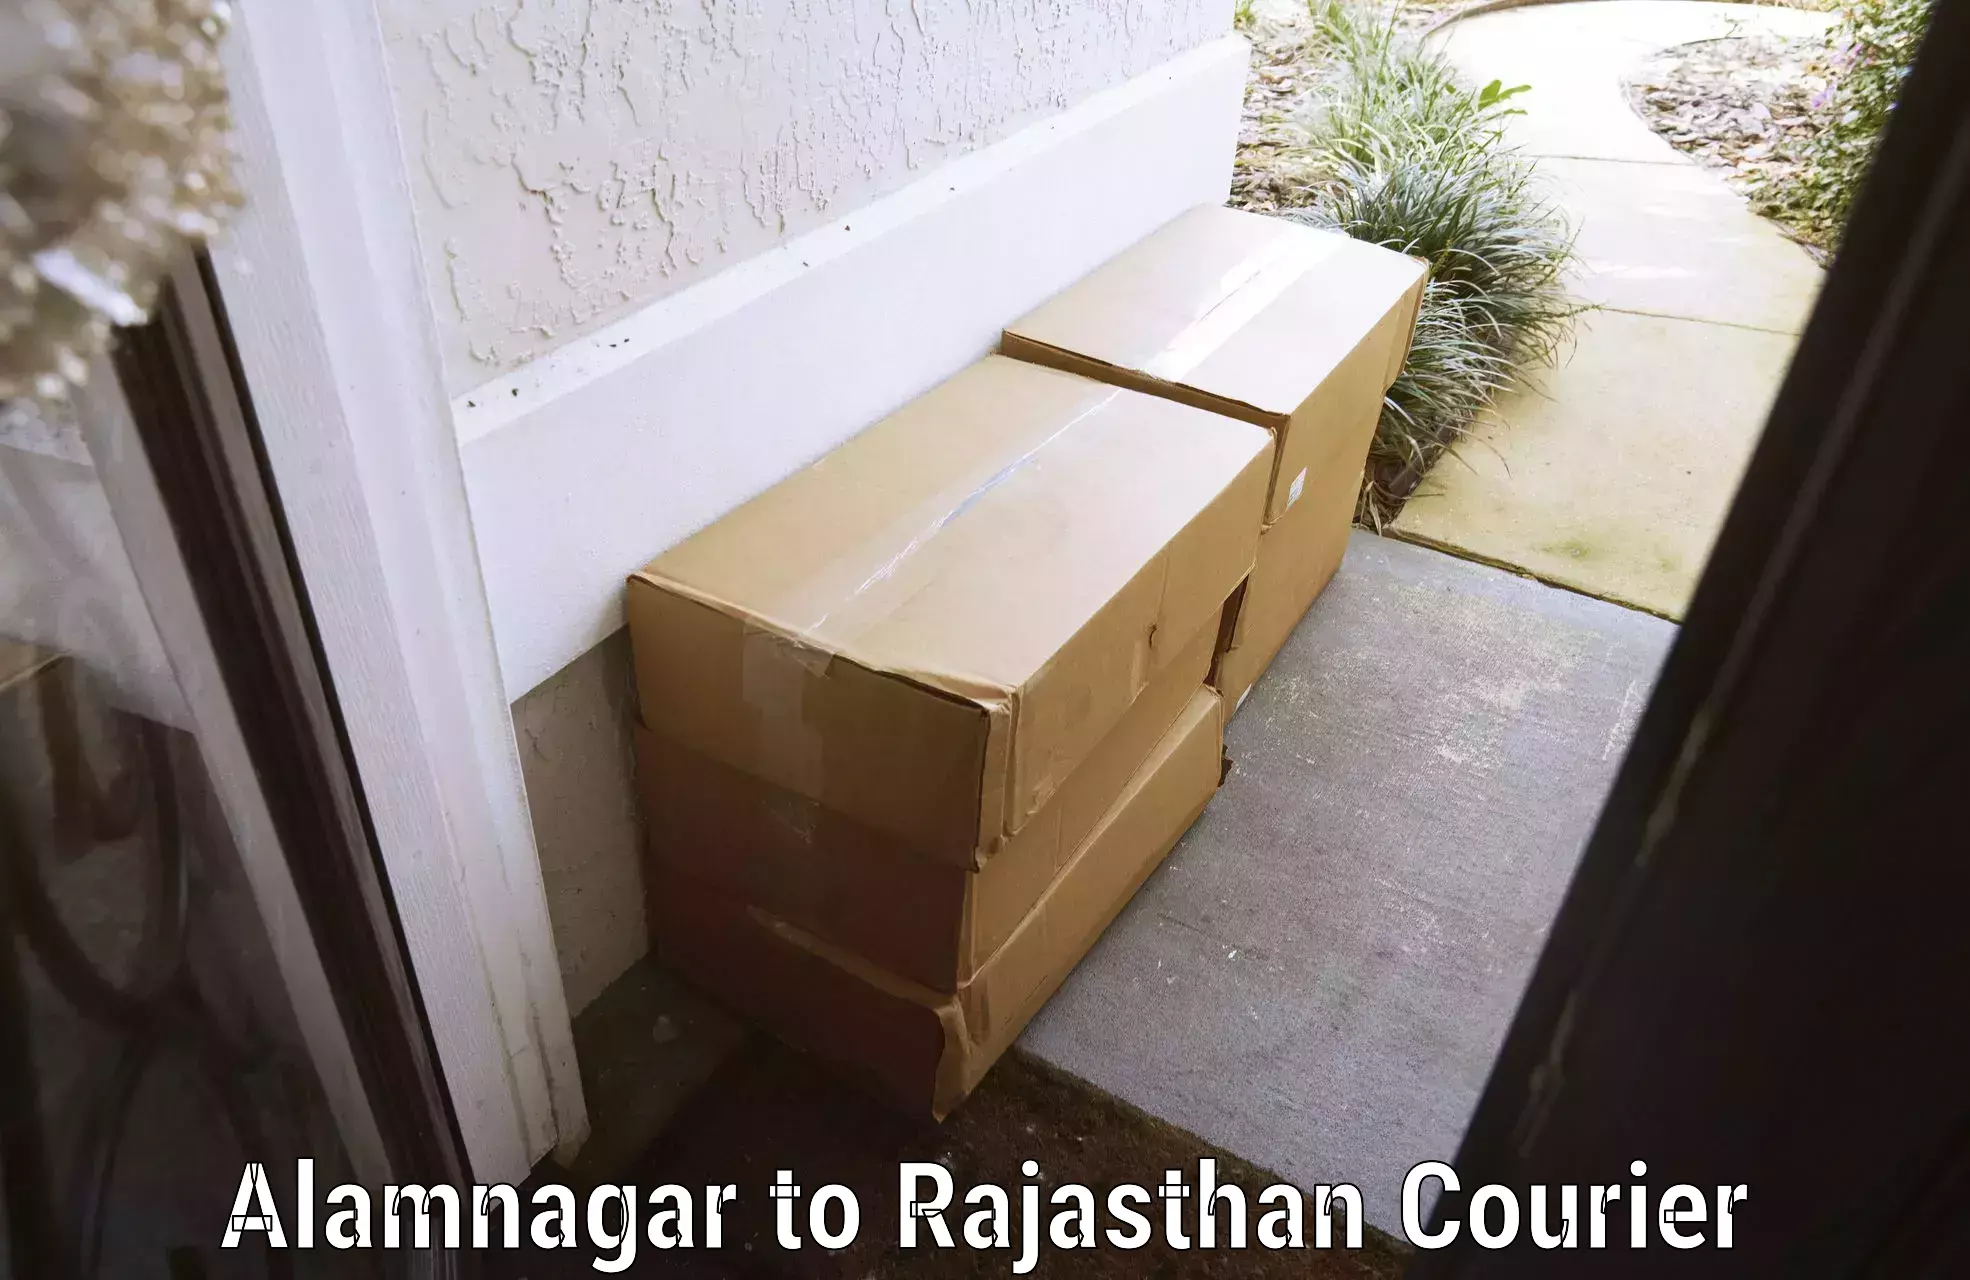 Holiday season luggage delivery Alamnagar to Nokha